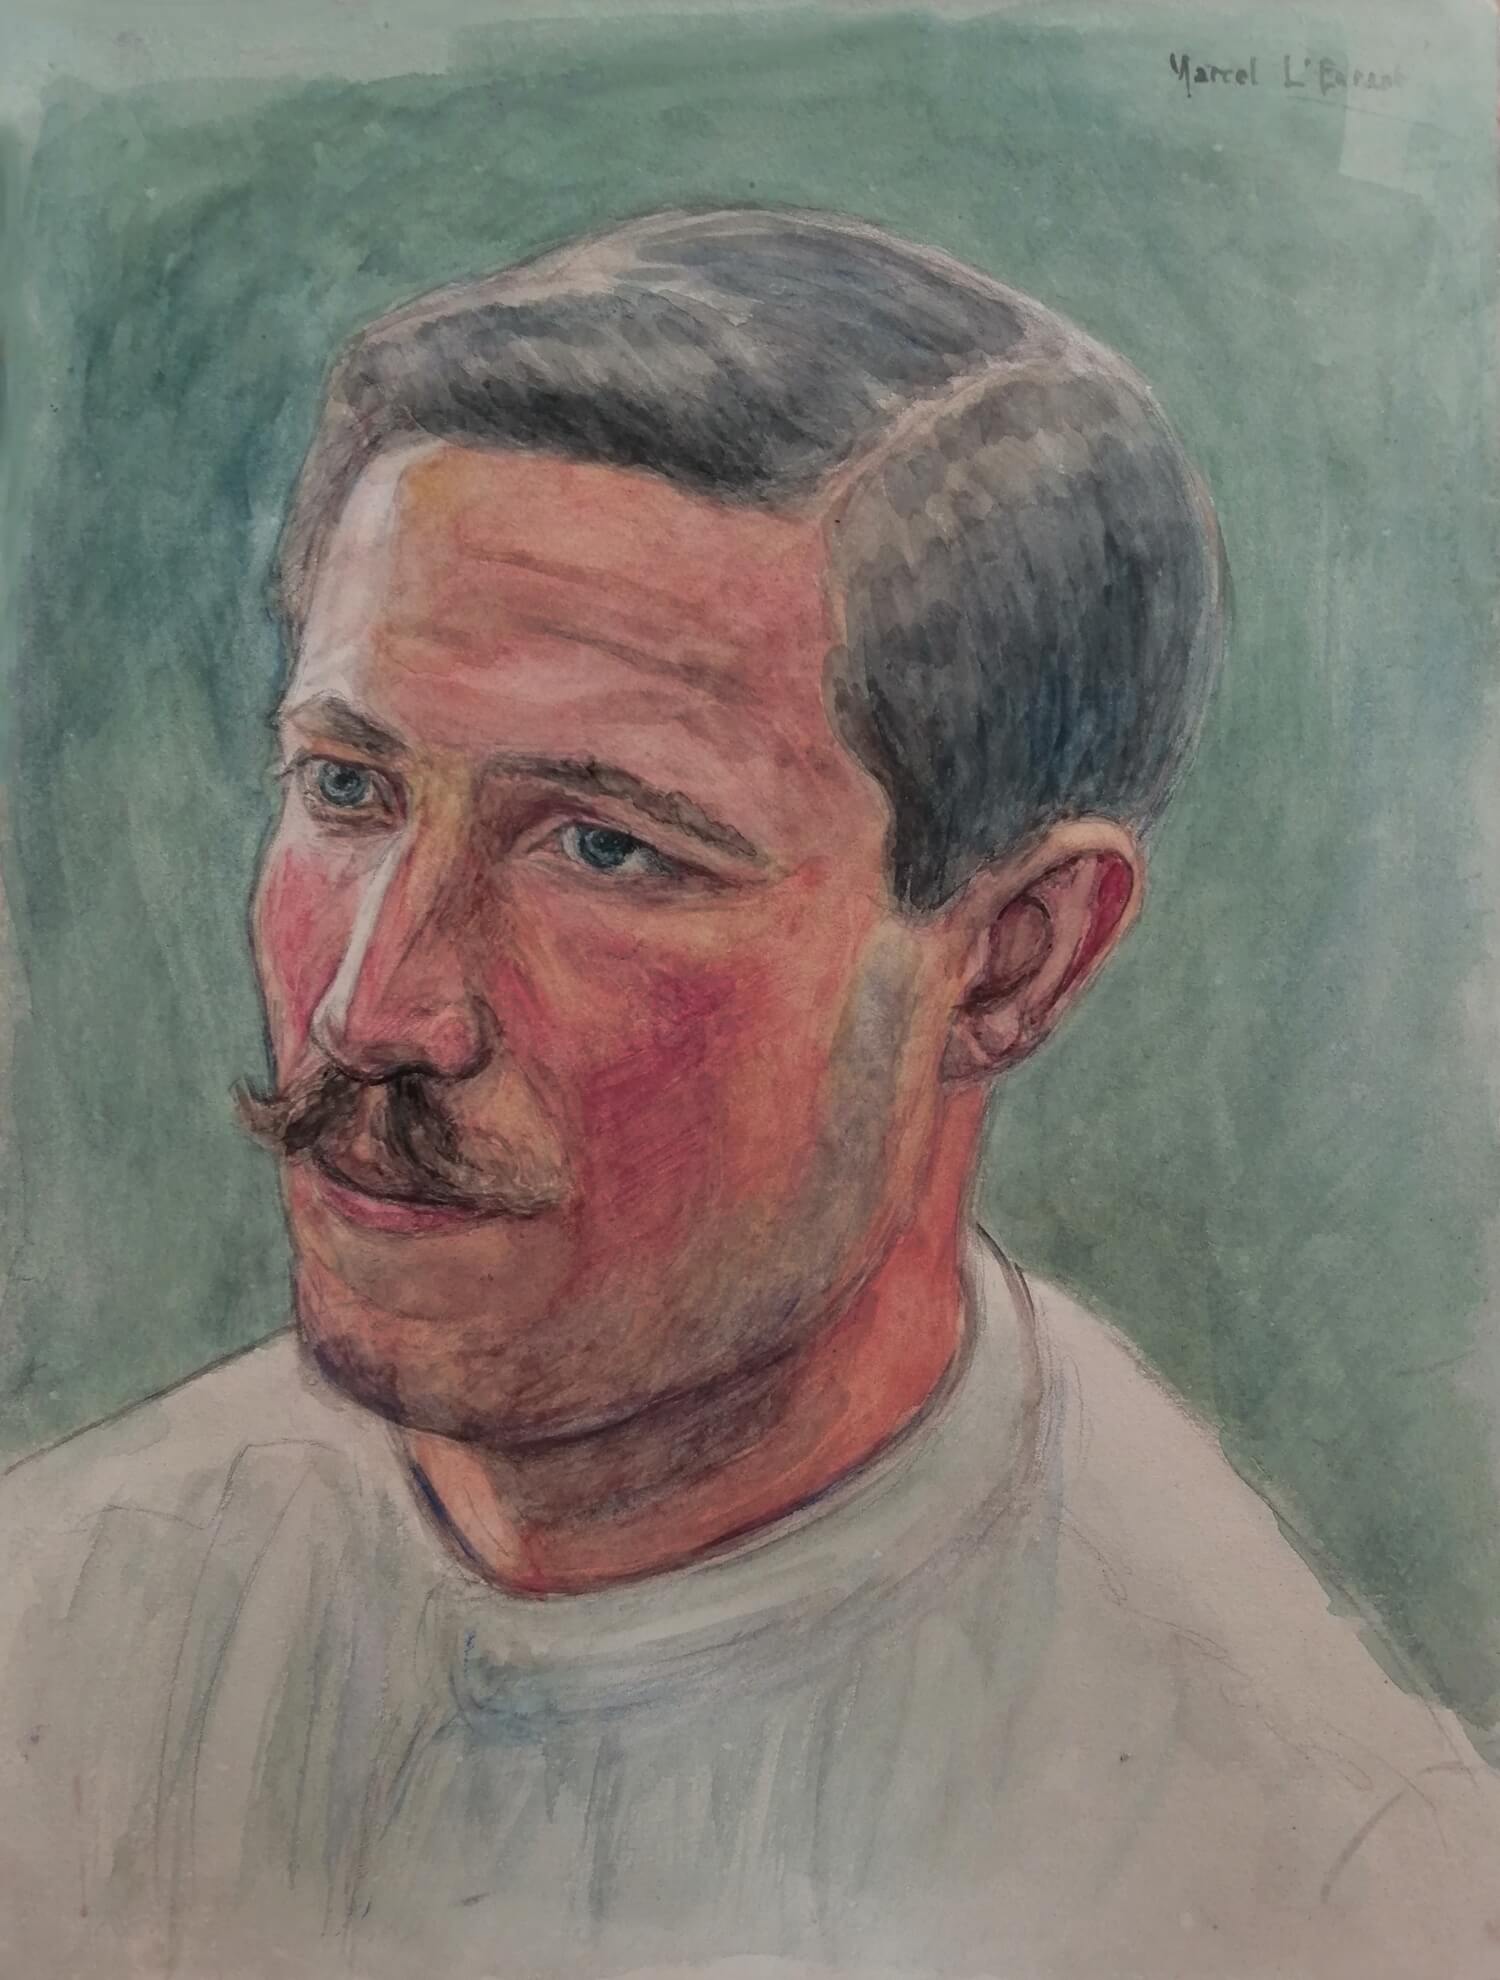 Portrait réalisé par Marcel L'Enfant dans un hôpital militaire le 18 Septembre 1916. Un blessé brûlé au visage? Un infirmier ou médecin (blouse blanche)?